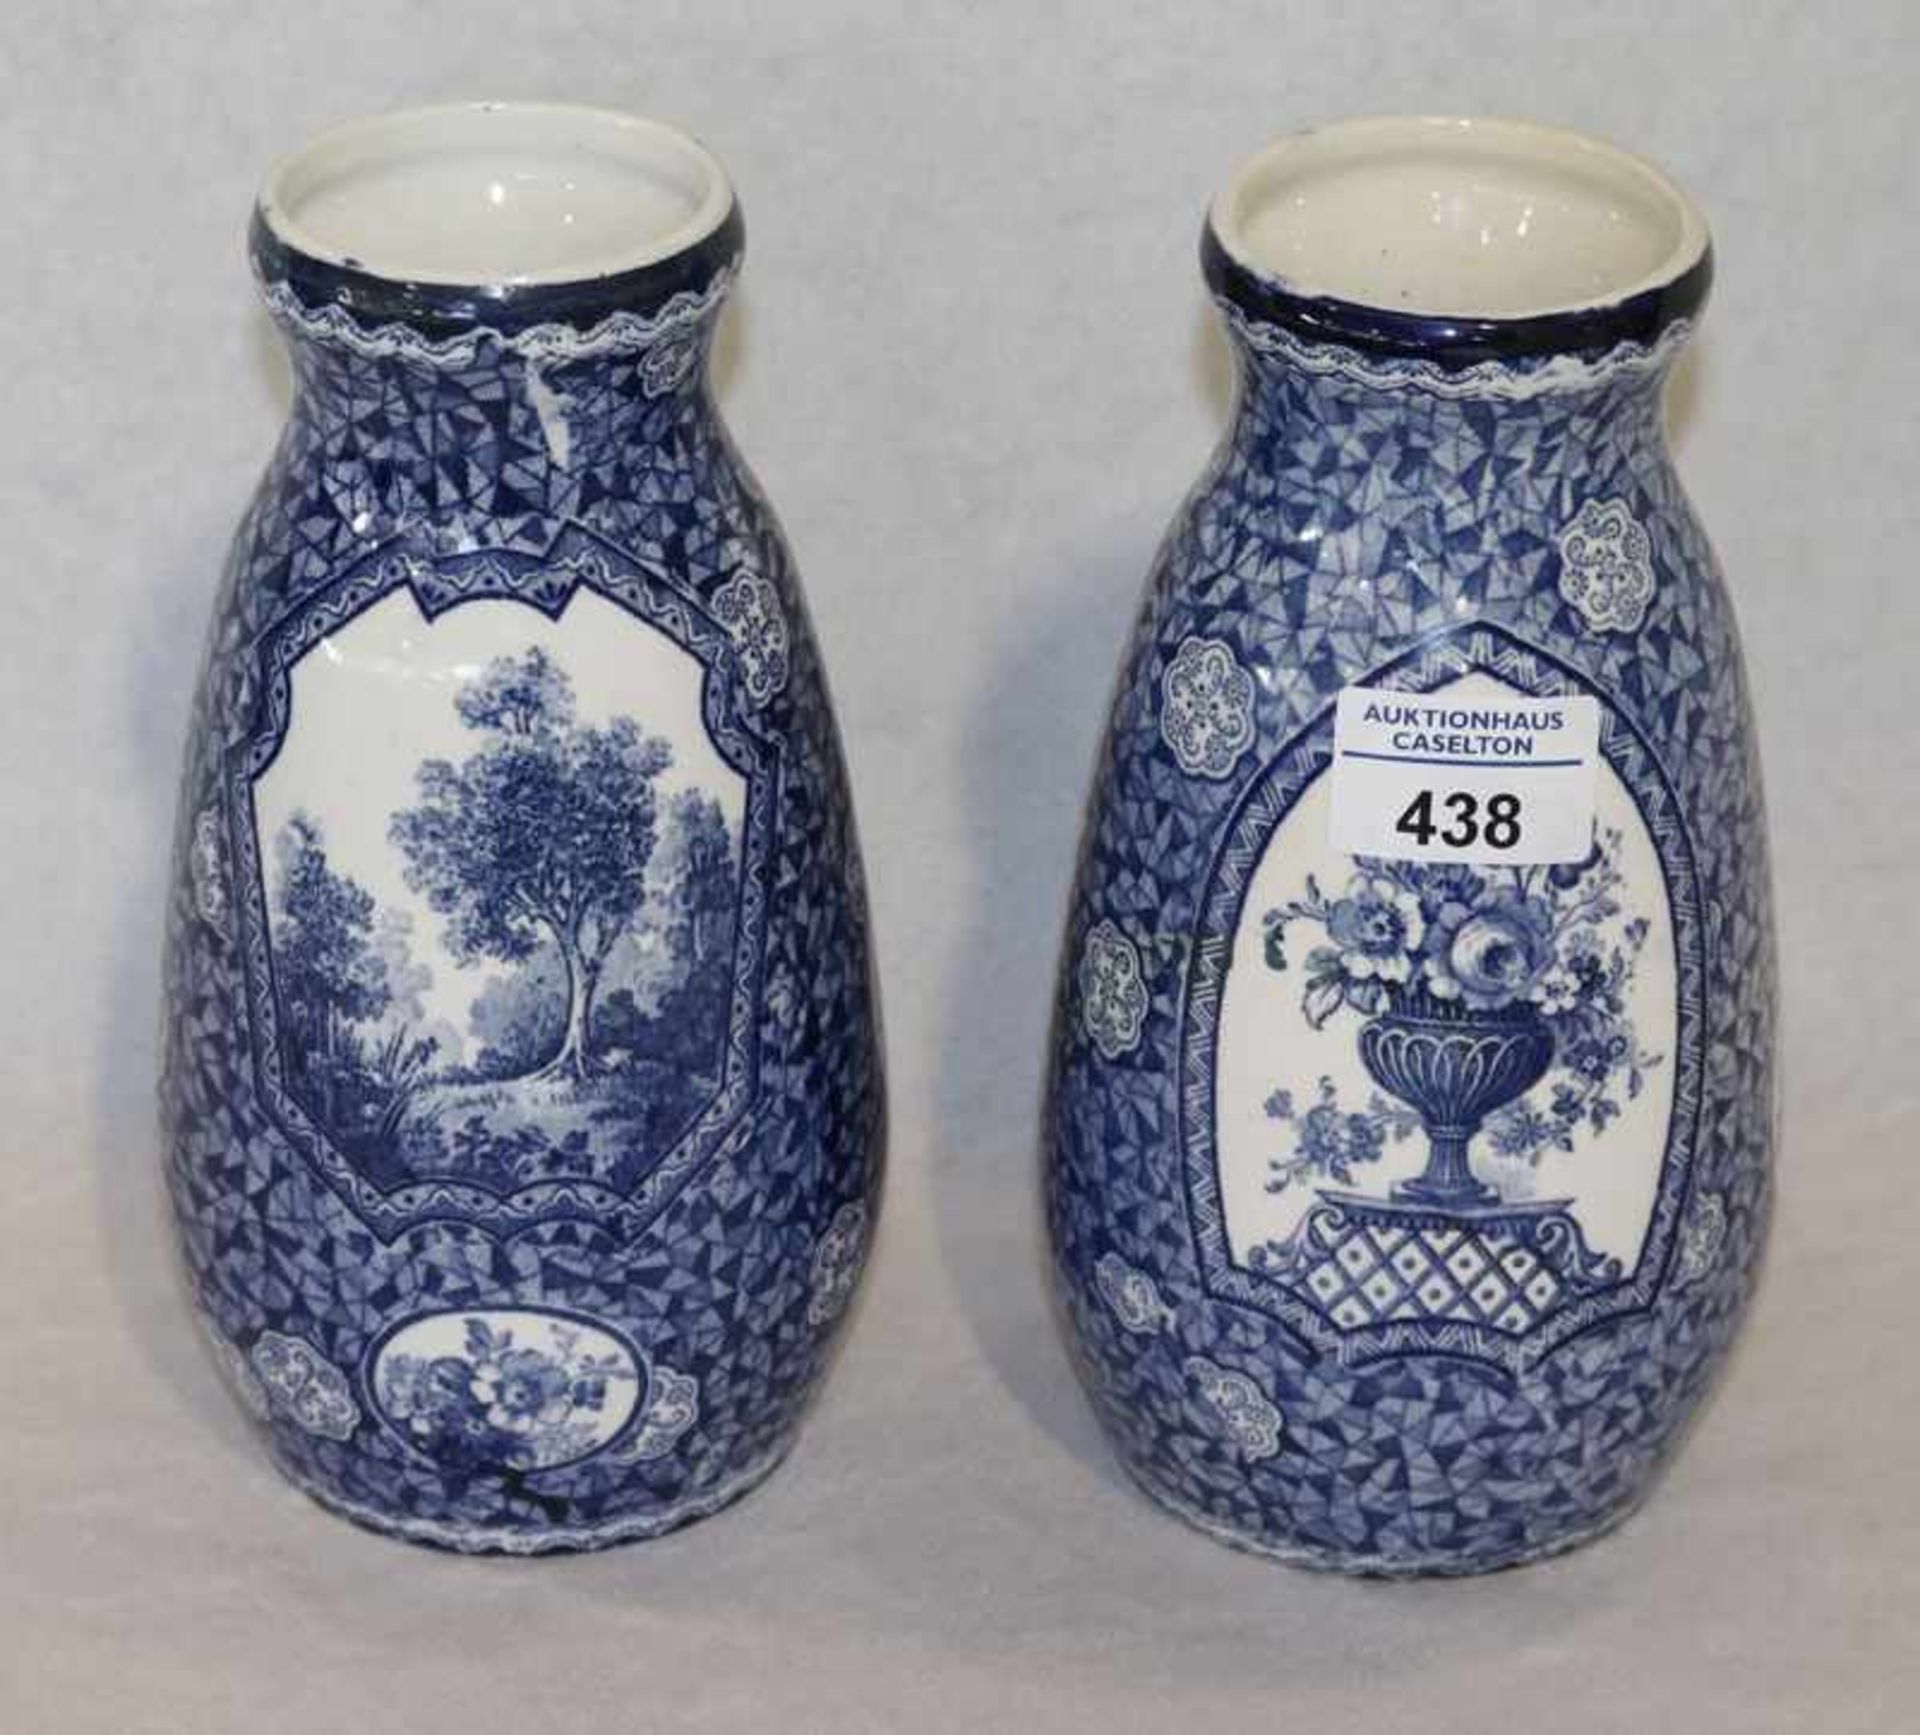 Paar Keramik Blumenvasen mit blauem Dekor, H 21 cm, D 12 cm, Gebrauchsspuren